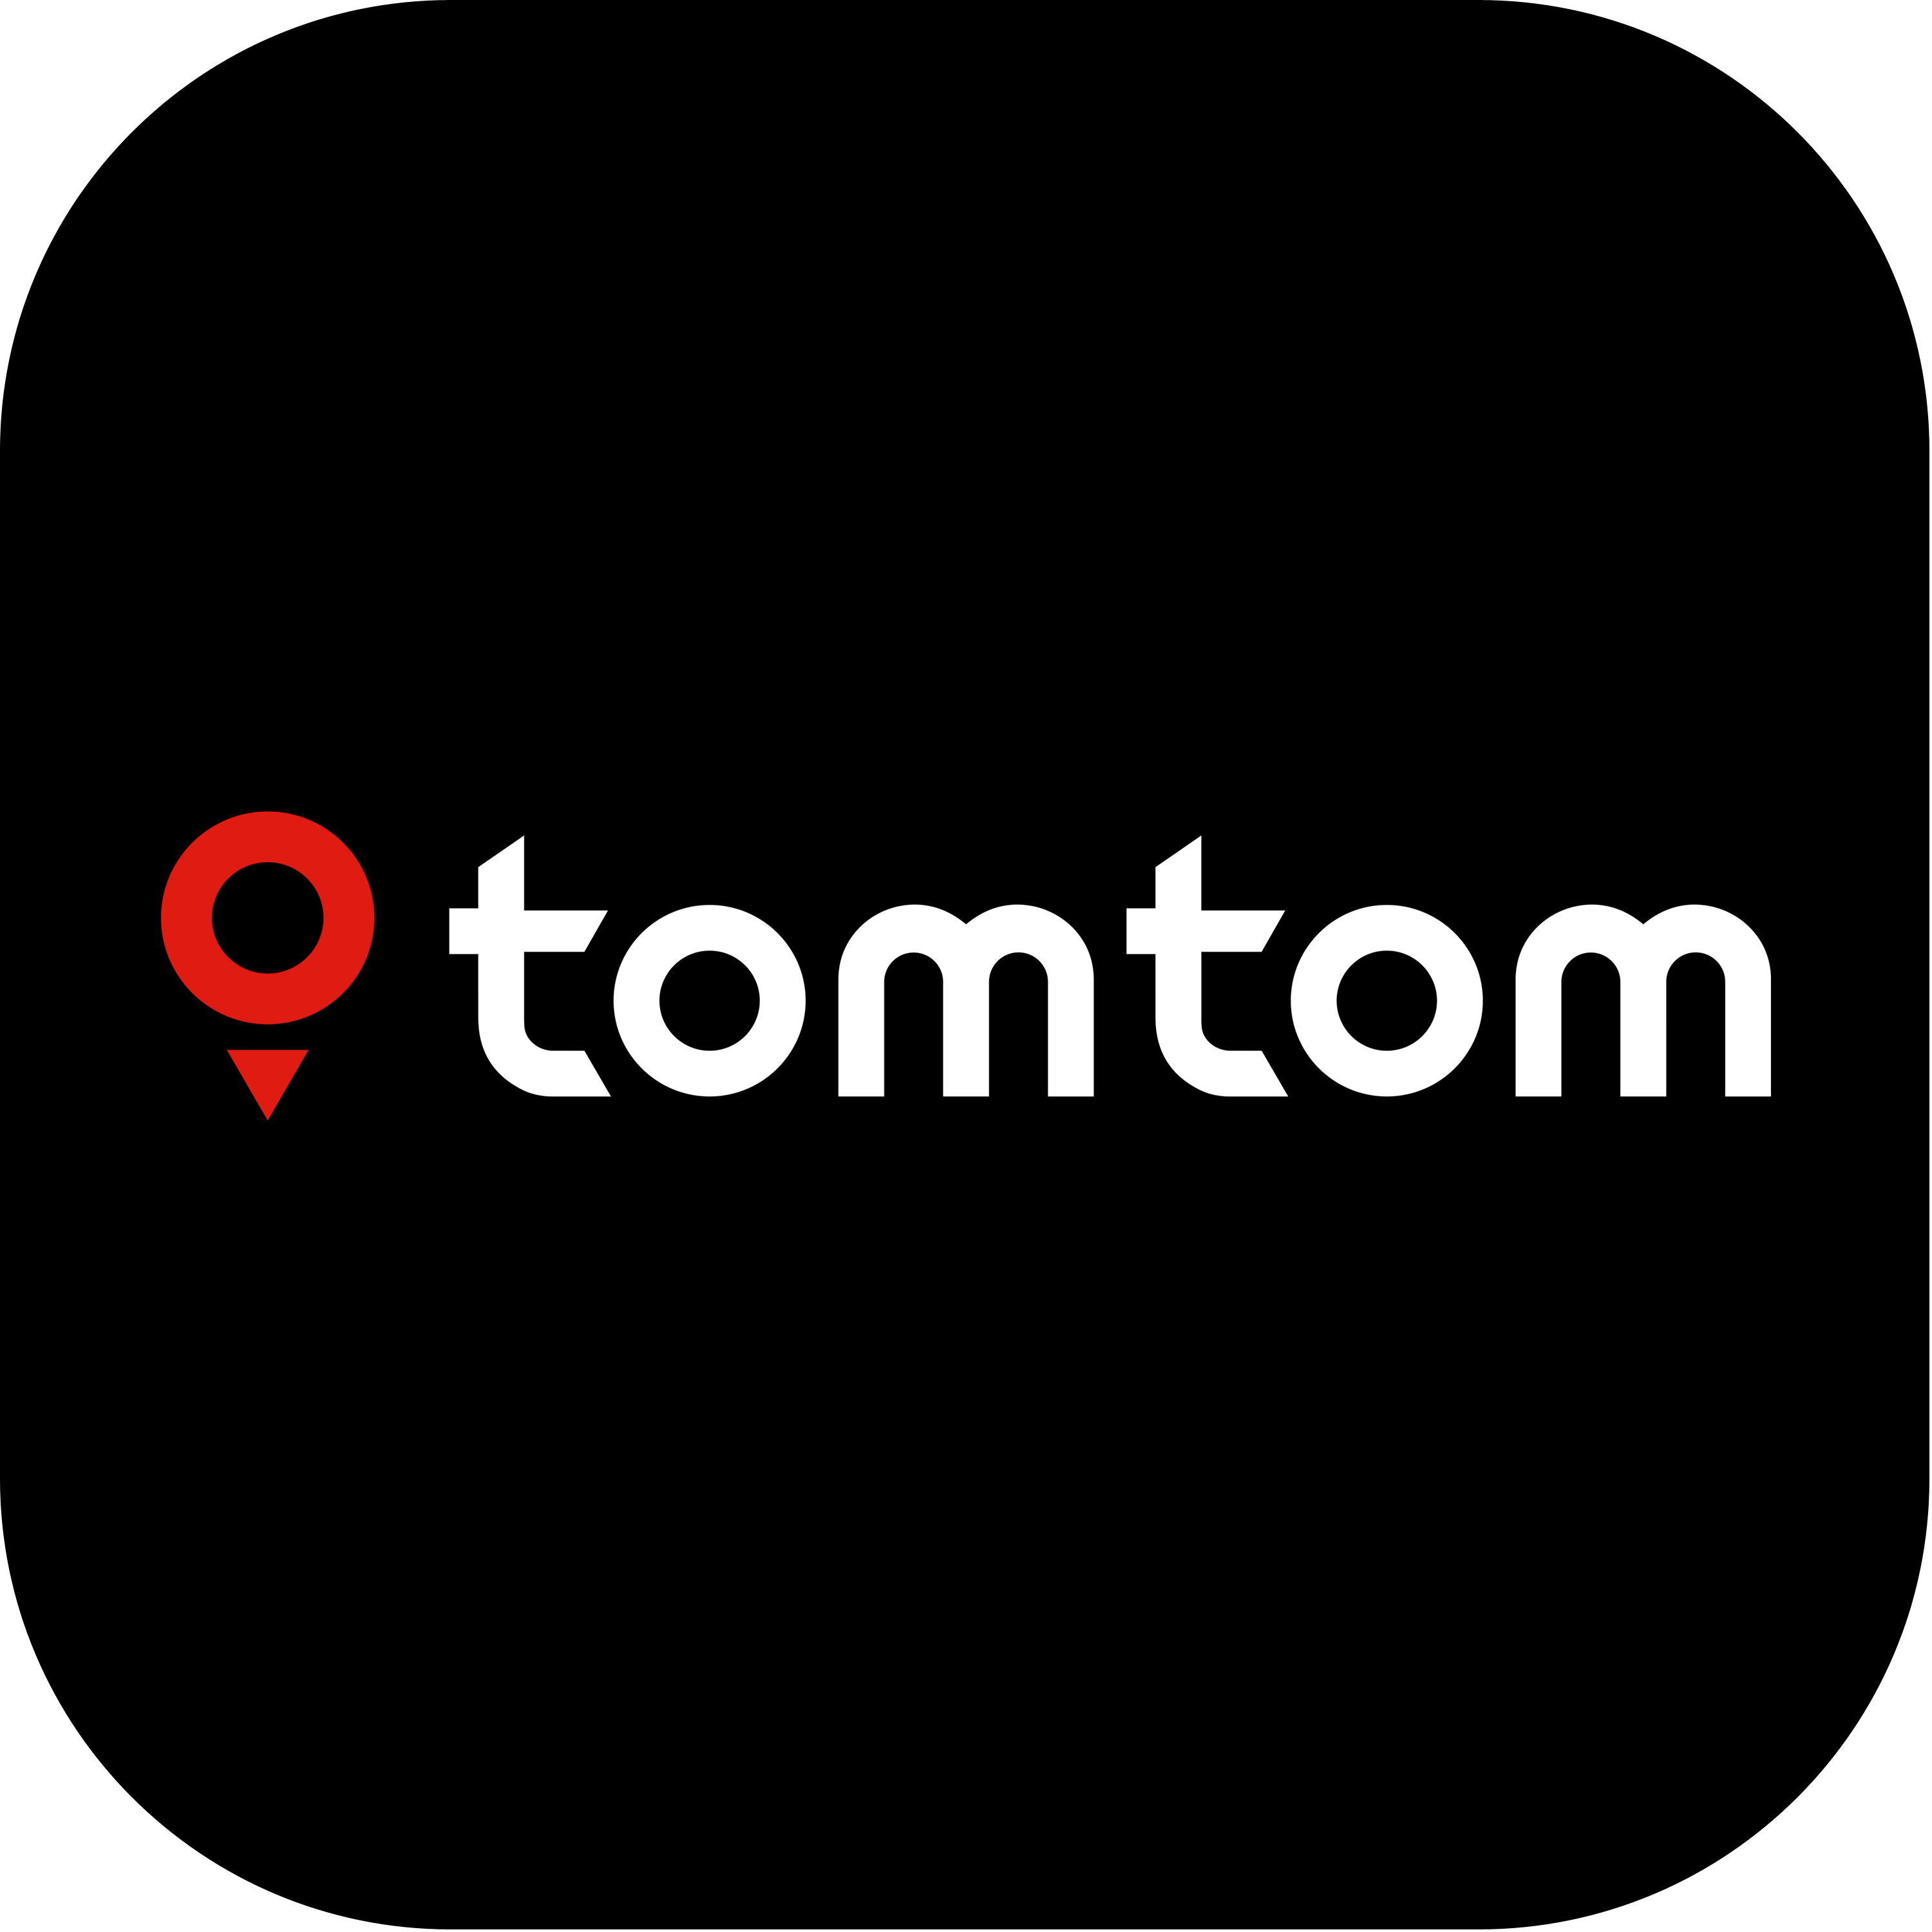 Tomtom Logo Transparent Photo